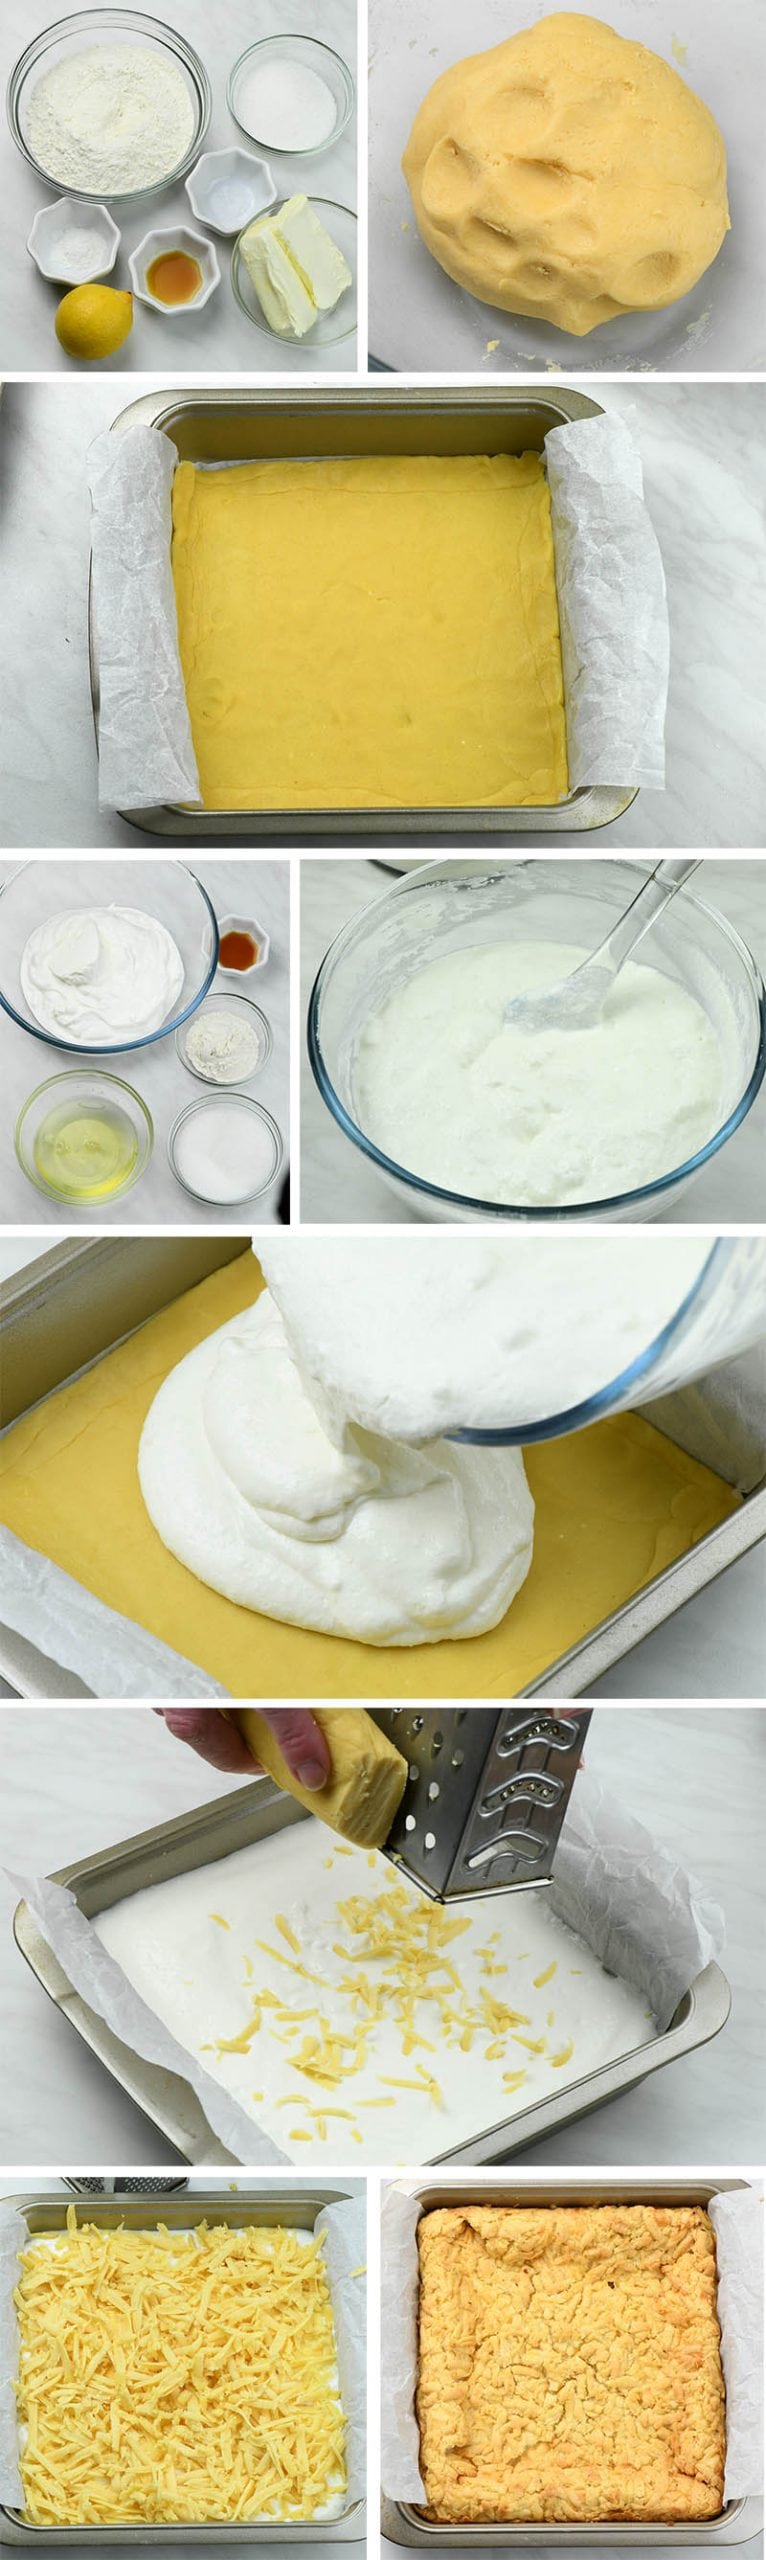 Lemon Yogurt Squares step by step instruction.